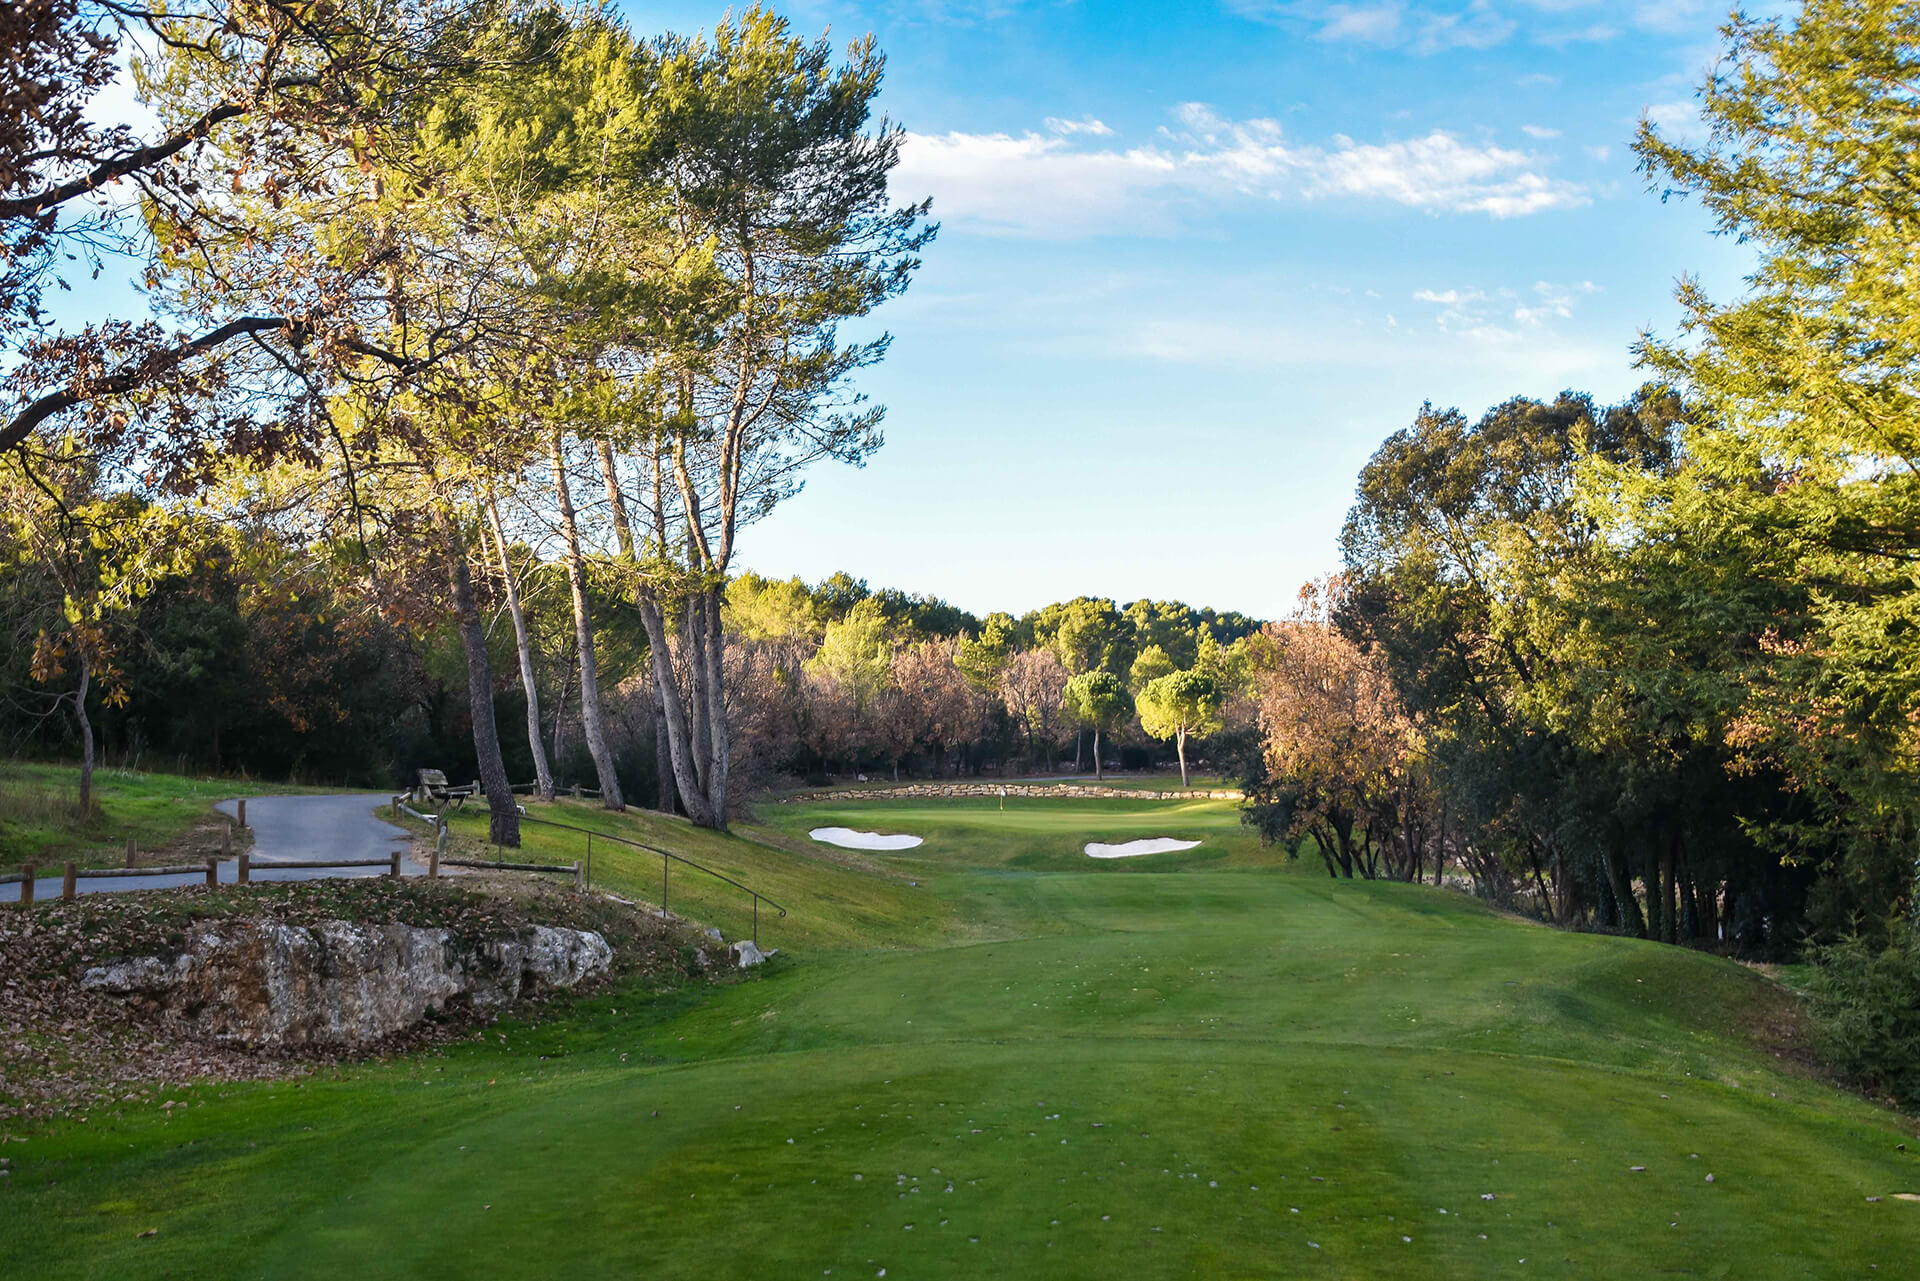 Golf Cannes Mougins | golfcourse-review.com